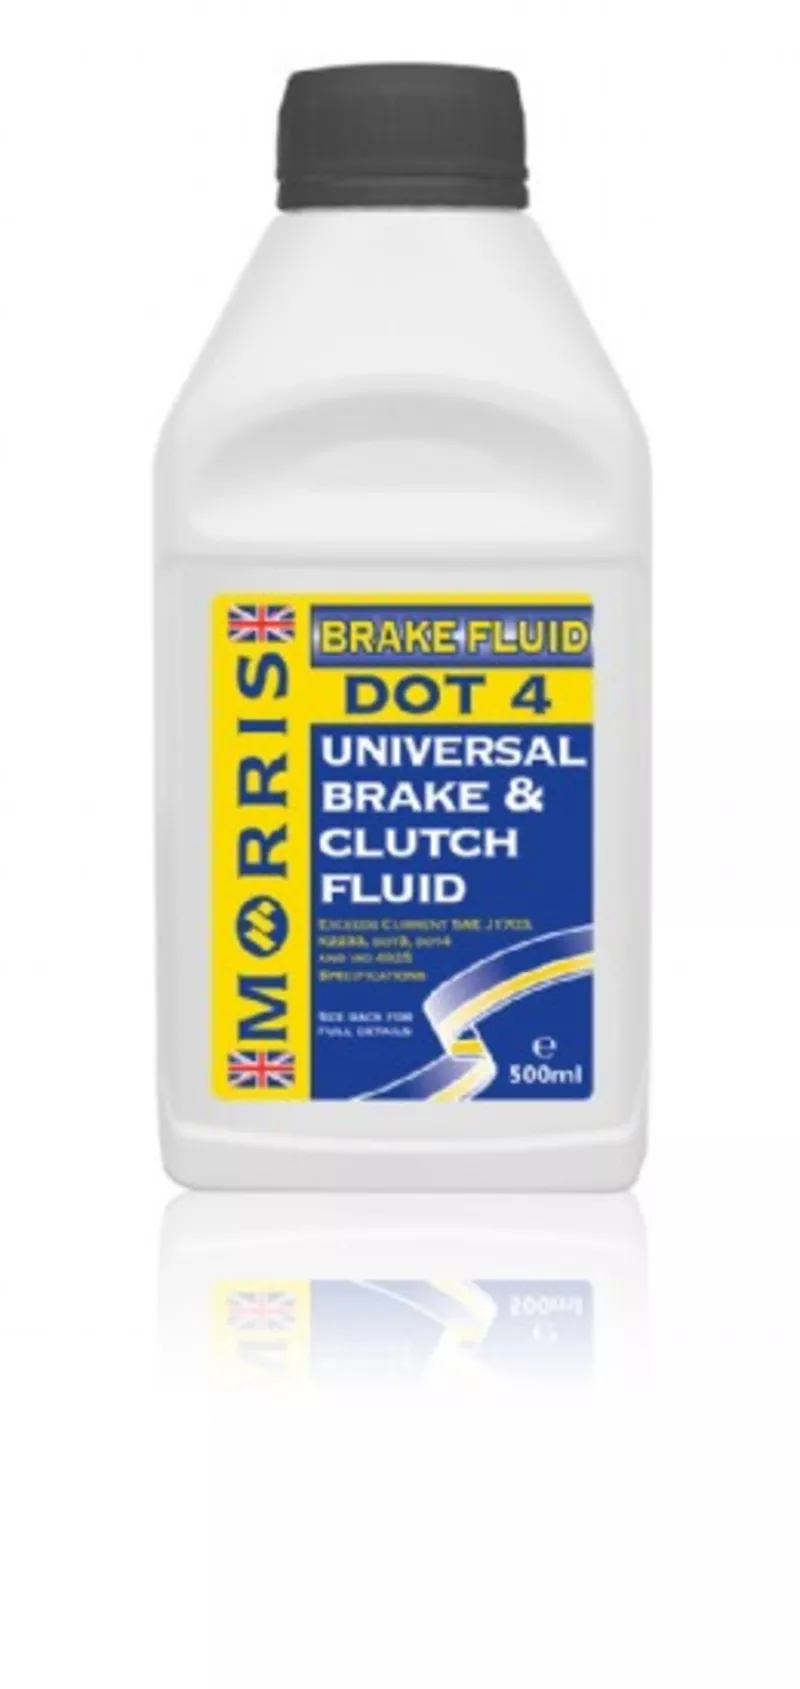 Universal Brake & Clutch Fluid - Автомобильная жидкость для систем тор